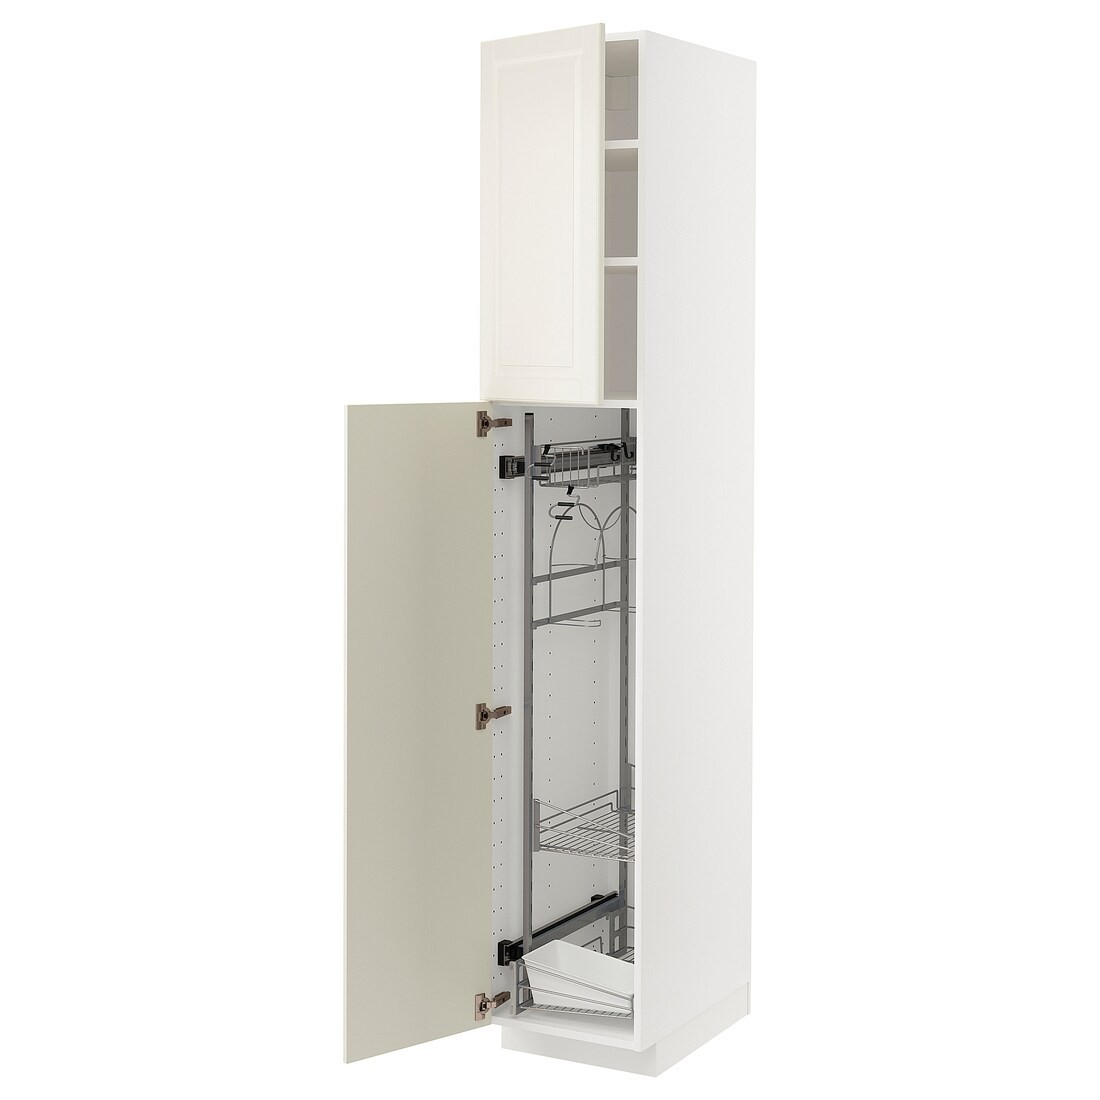 METOD МЕТОД Висока шафа з відділенням для аксесуарів для прибирання, білий / Bodbyn кремовий, 40x60x220 см